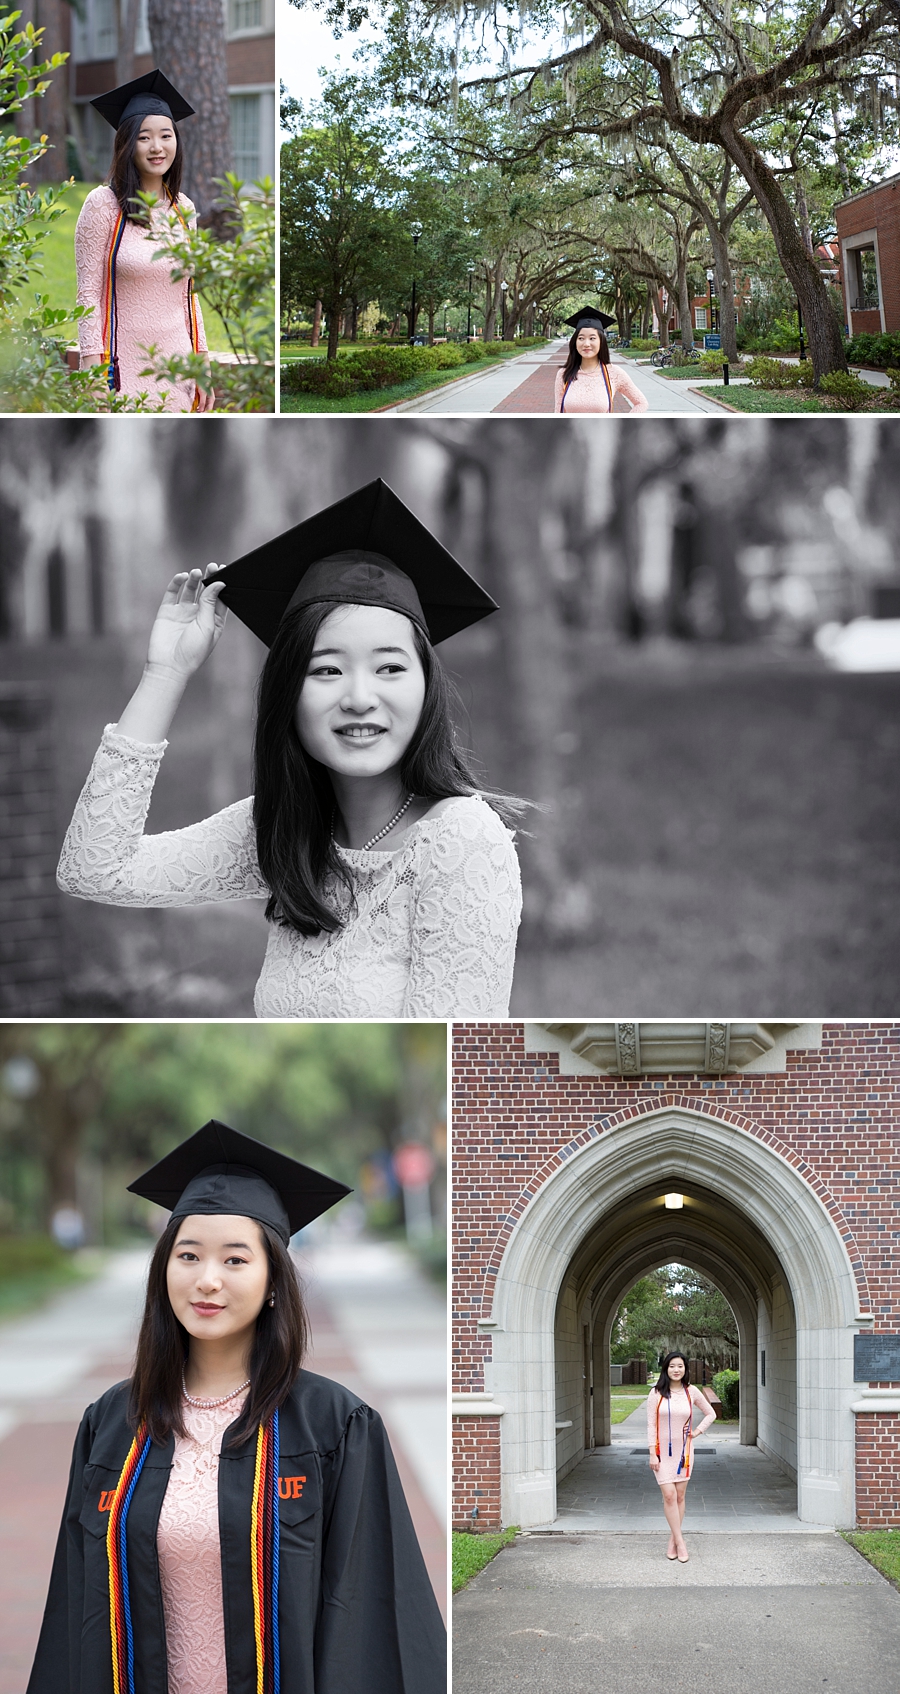 UF senior graduation photos on campus